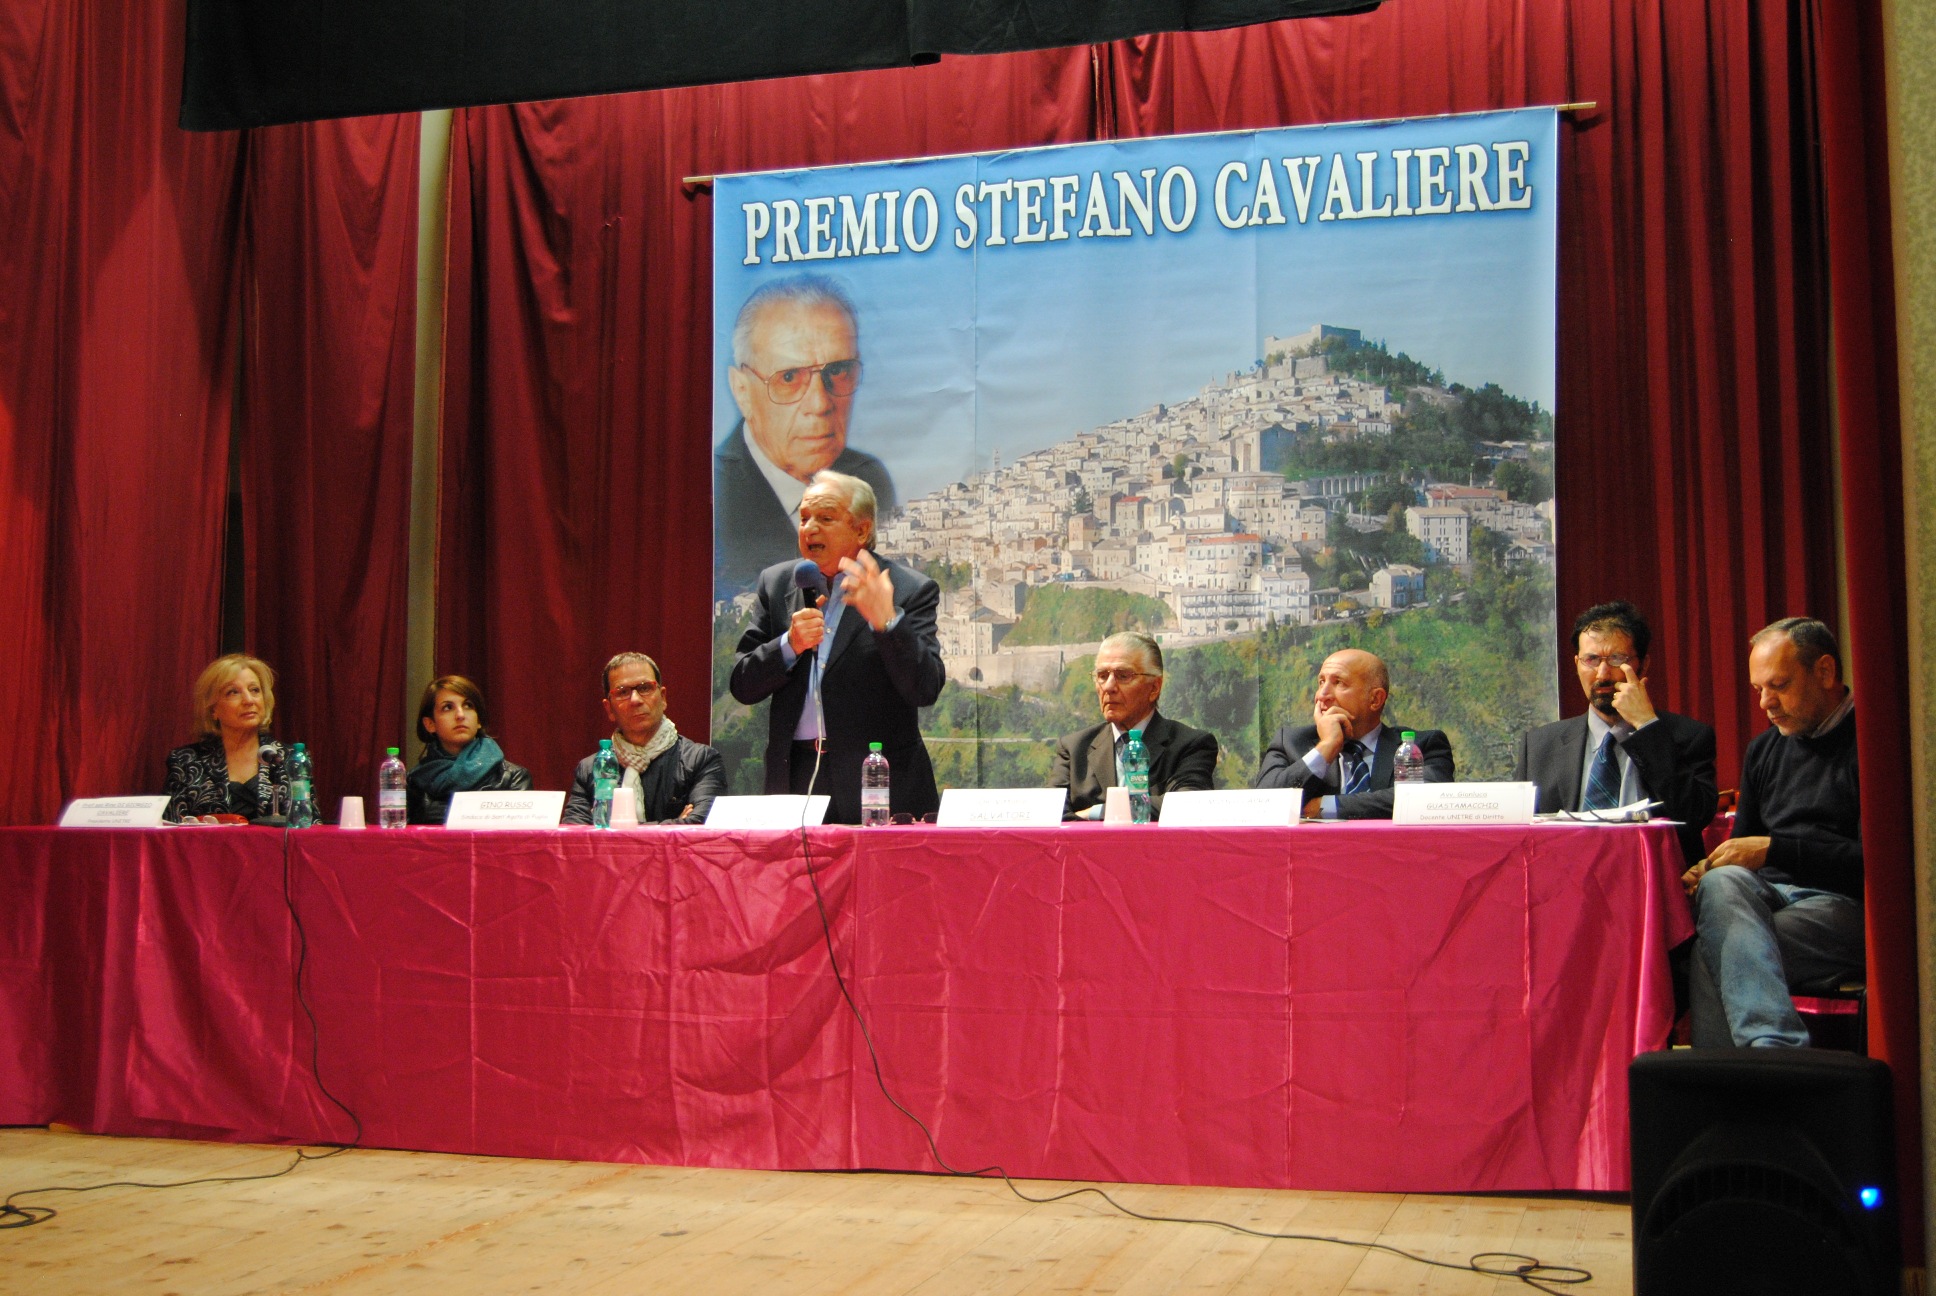 Sant’ Agata di Puglia, premio Stefano Cavaliere 2014